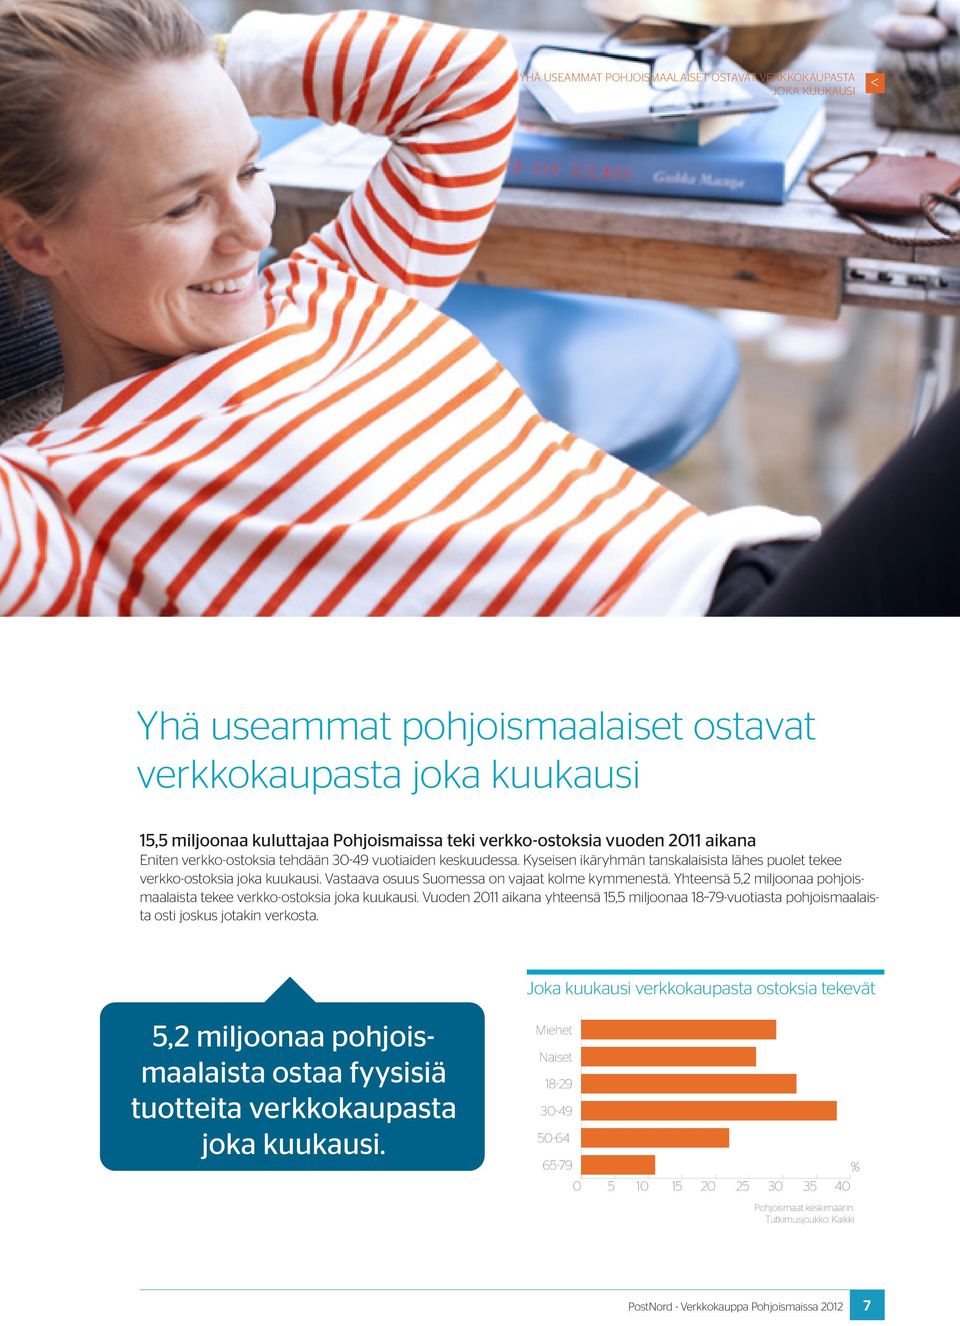 Kyseisen ikäryhmän tanskalaisista lähes puolet tekee verkko-ostoksia joka kuukausi. Vastaava osuus Suomessa on vajaat kolme kymmenestä.